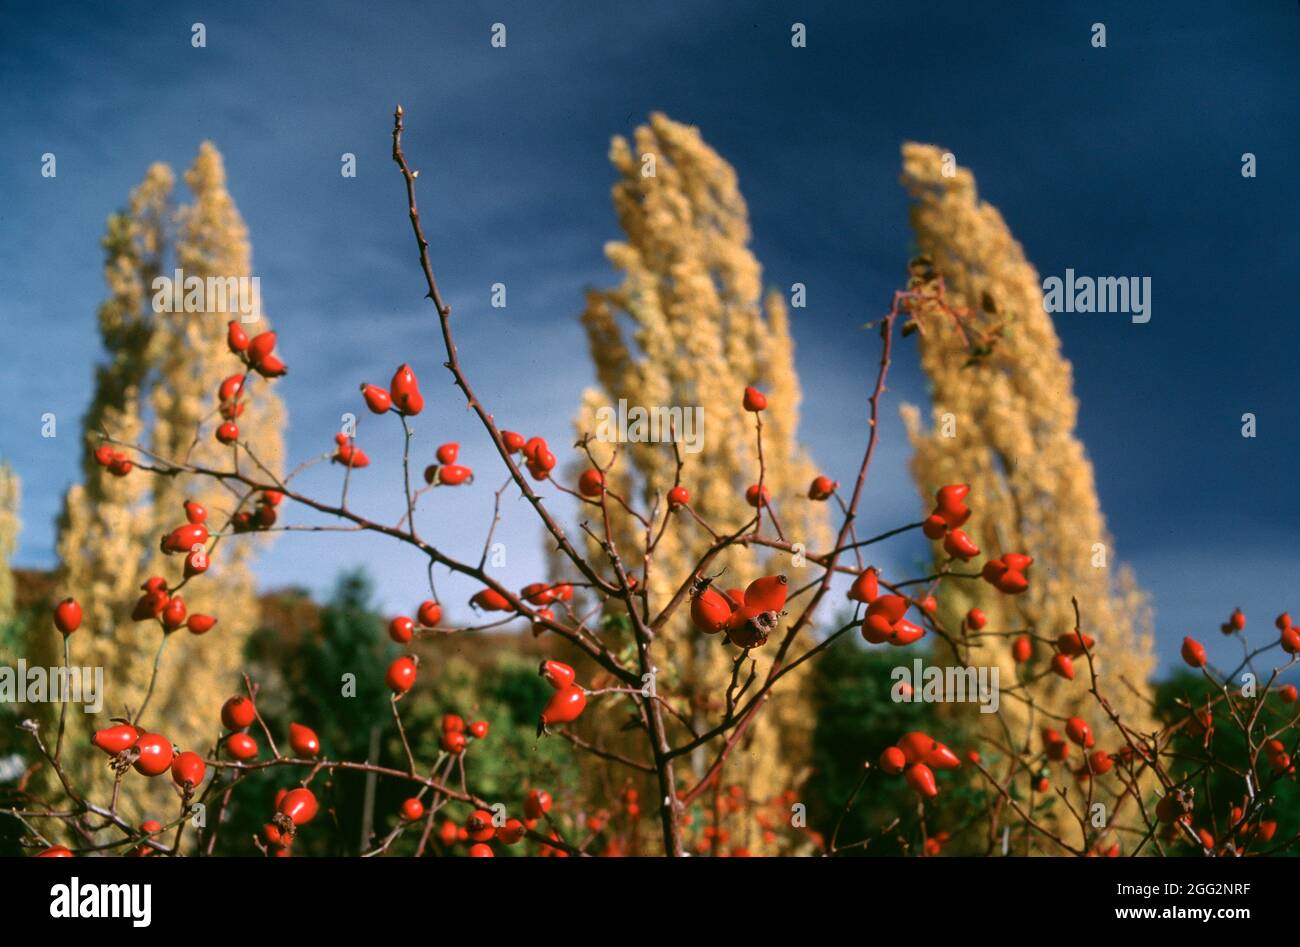 Beaucoup de baies rouges faisant face à un arrière-plan d'arbres jaunes pendant la saison d'automne Banque D'Images